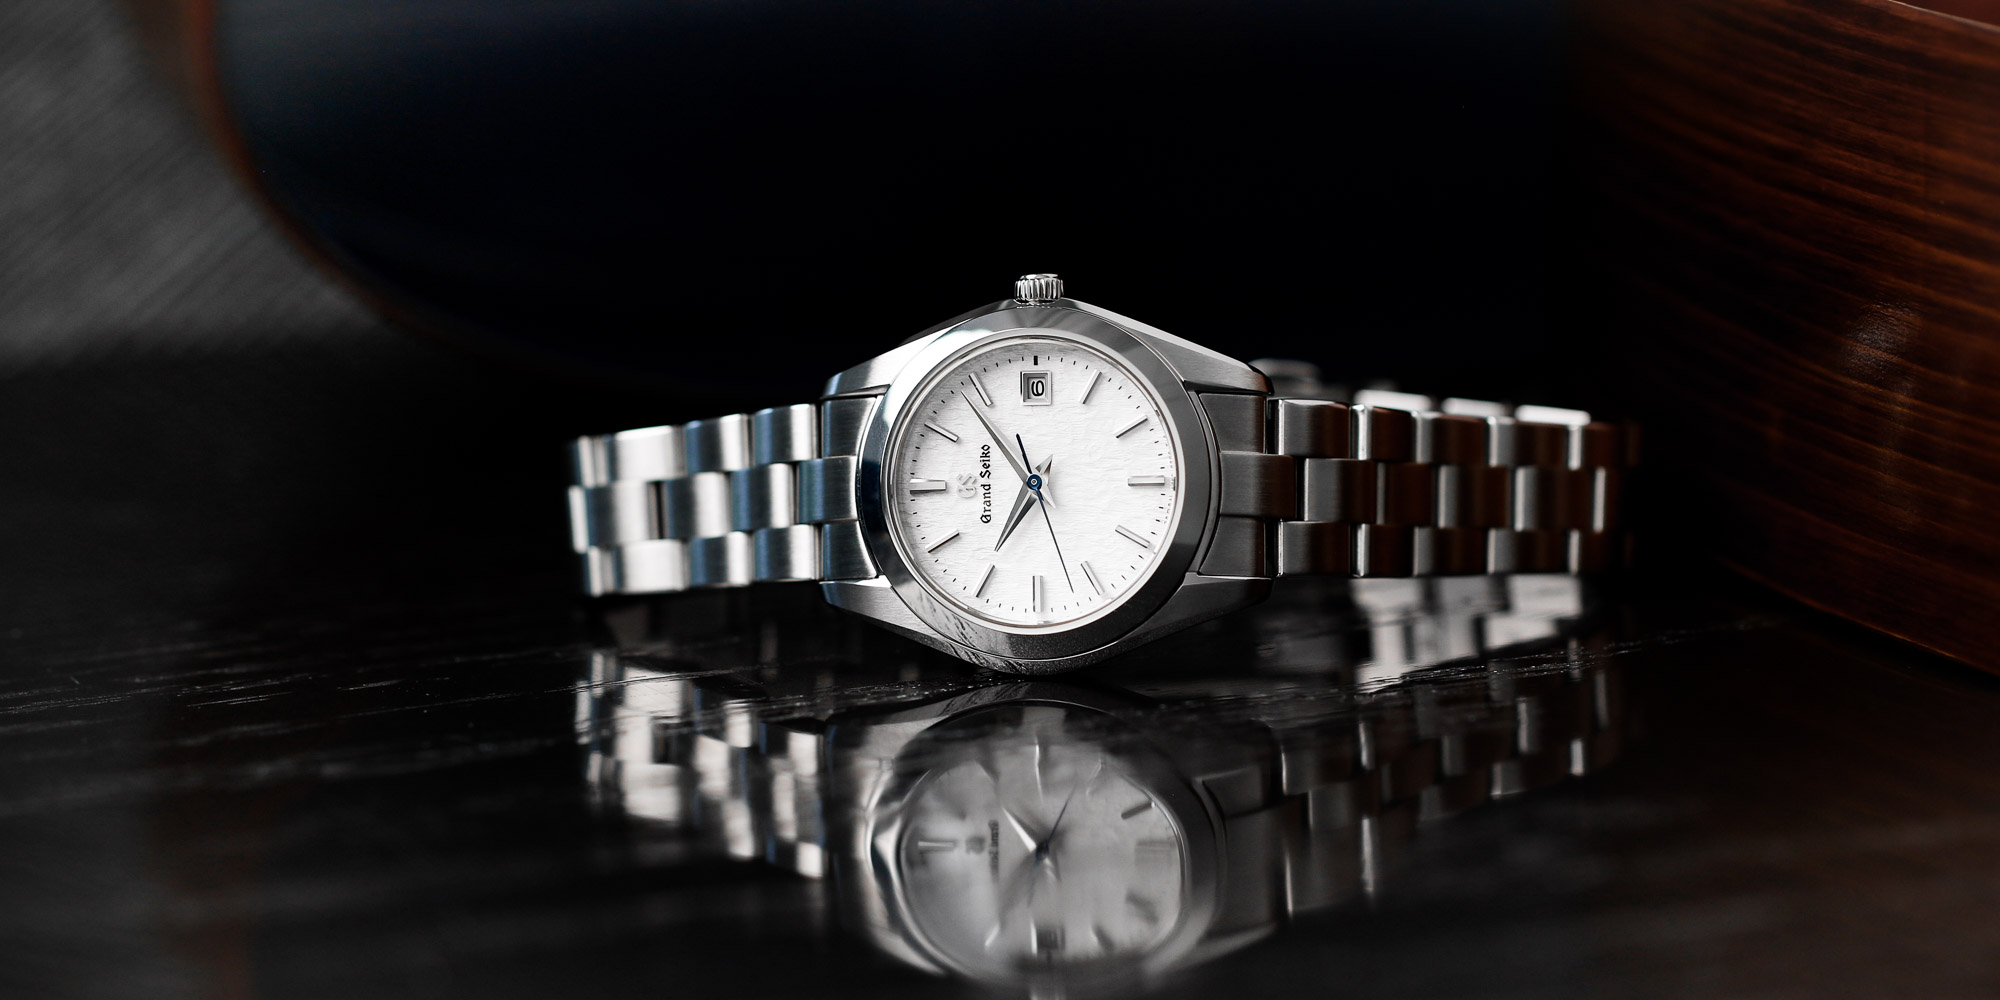 Grand Seiko STGF359 white dial wristwatch on a tabletop